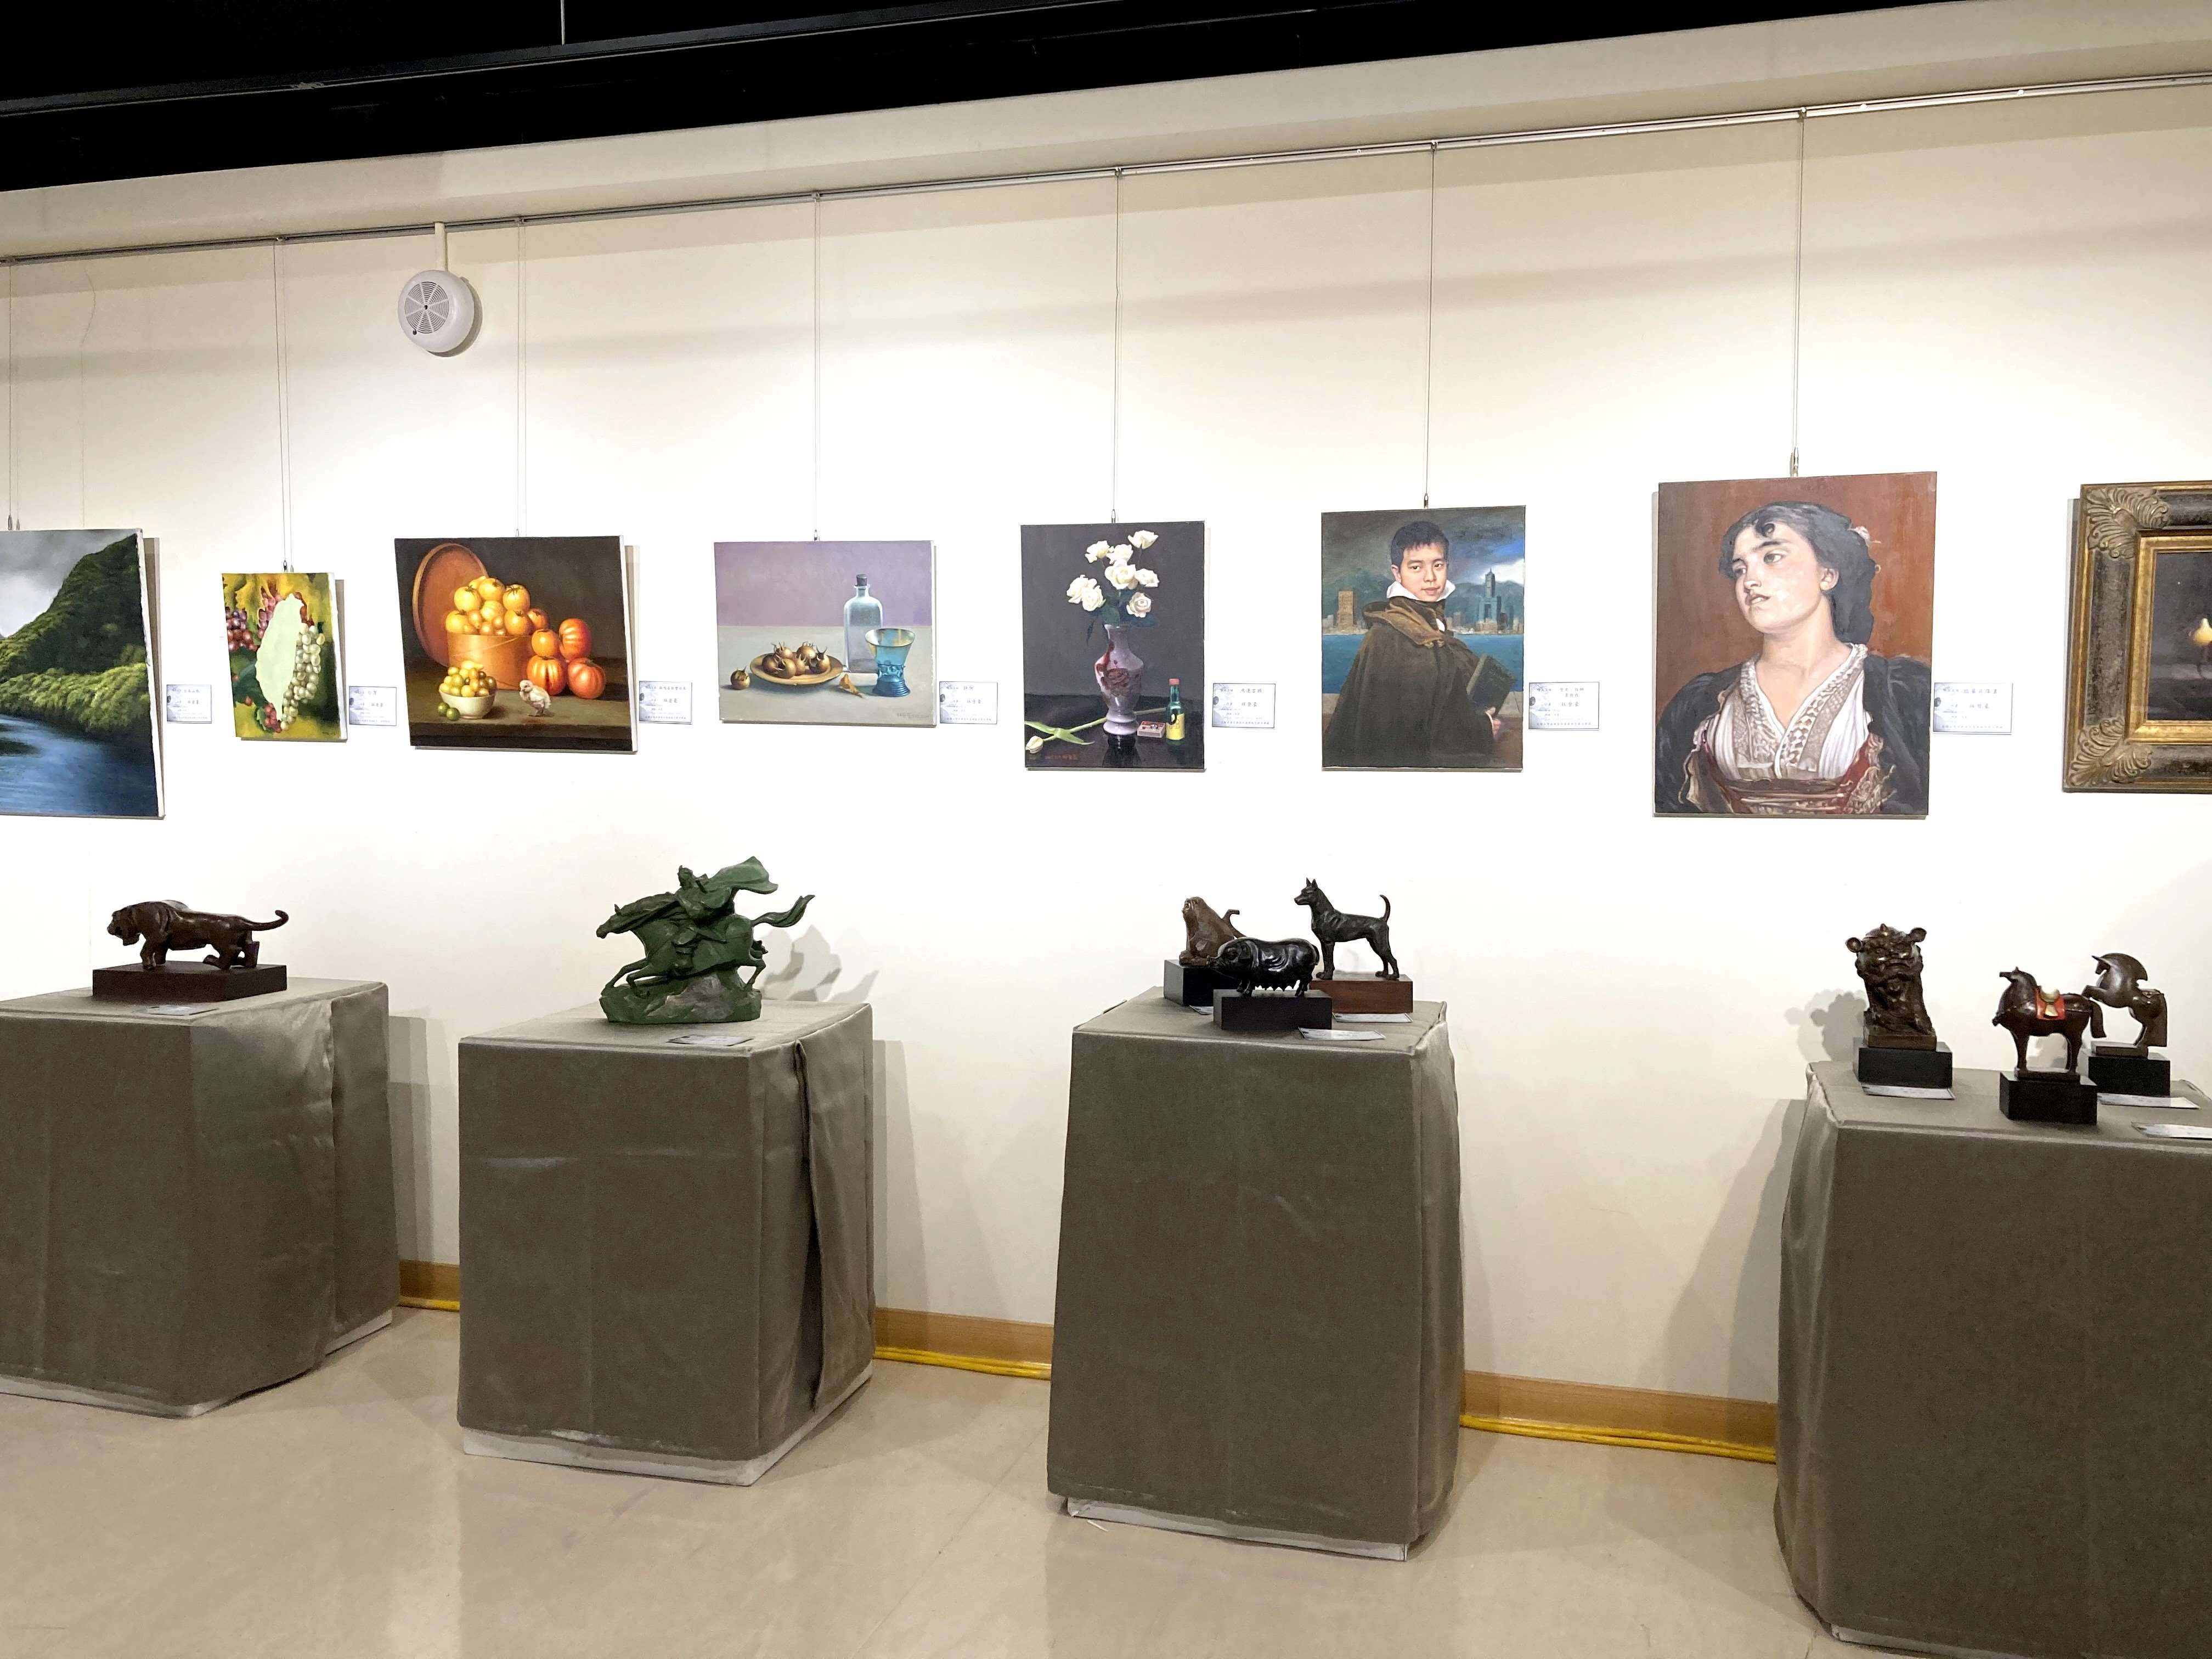 支持台灣古典藝術基礎教育聯展  12/4-25於文化觀光處展覽館3樓展出